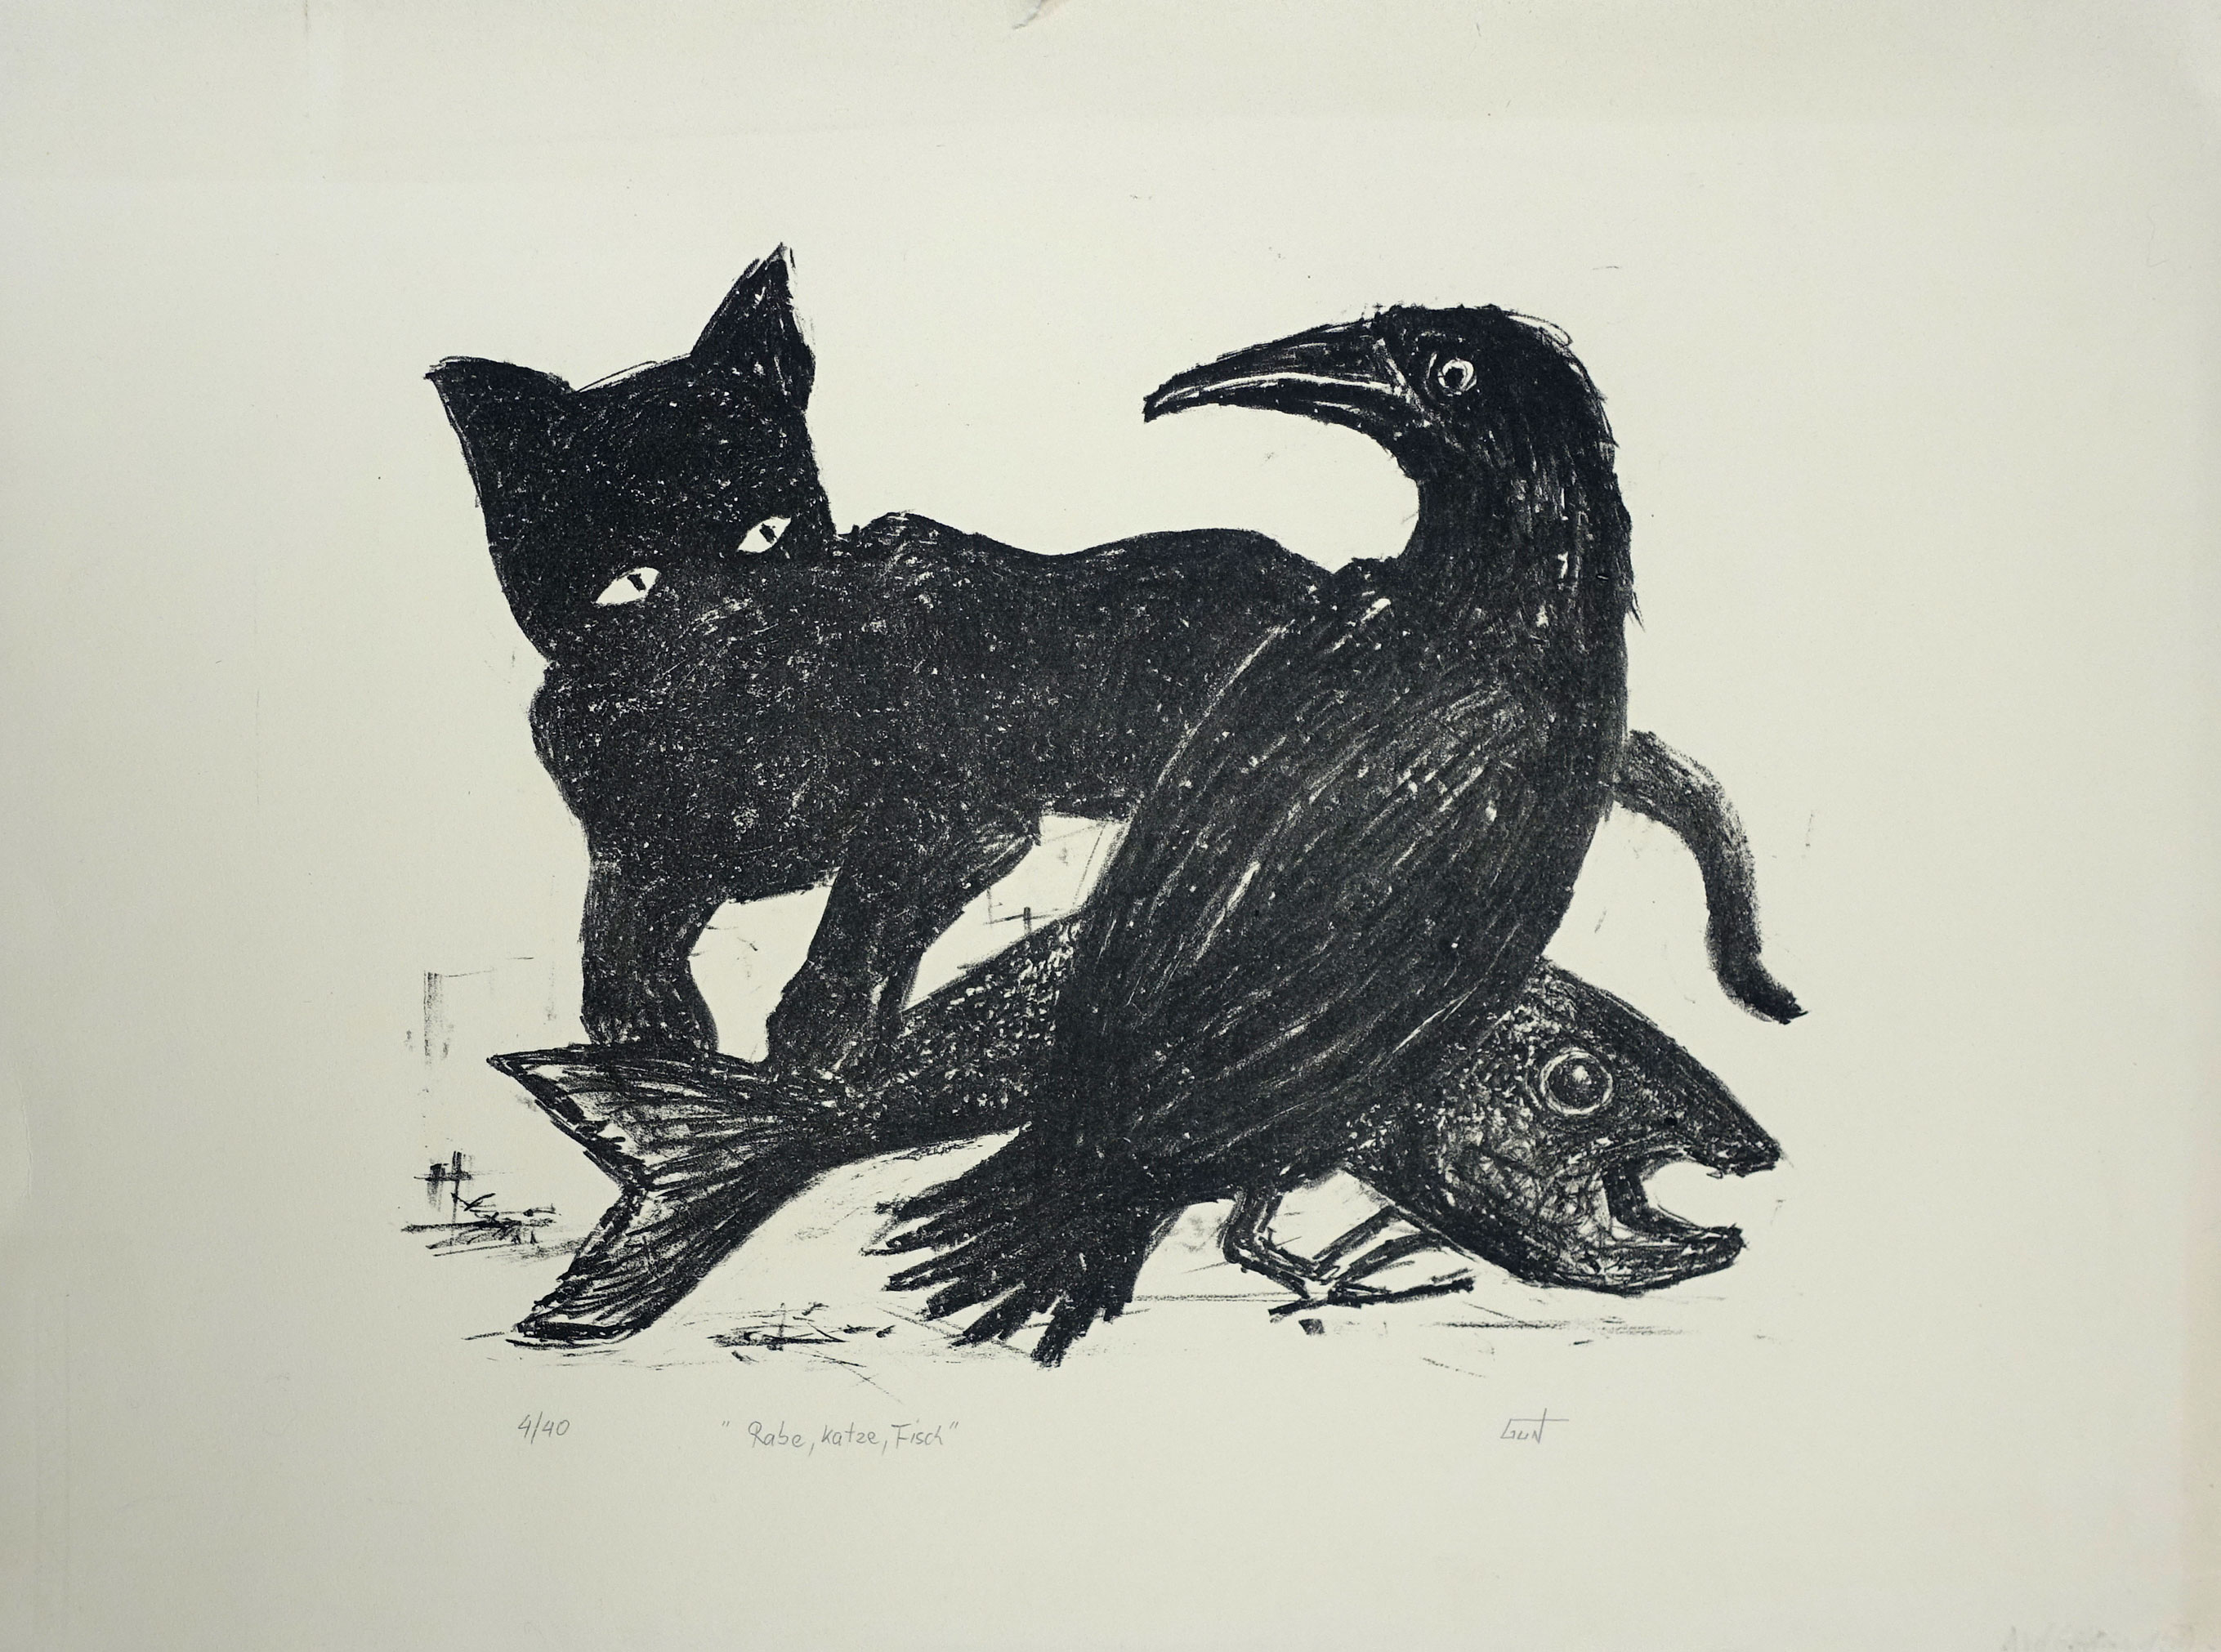 Galerie Jacobsa- Buy Art Online - Online Art Gallery - Gun, crow, cat, fish